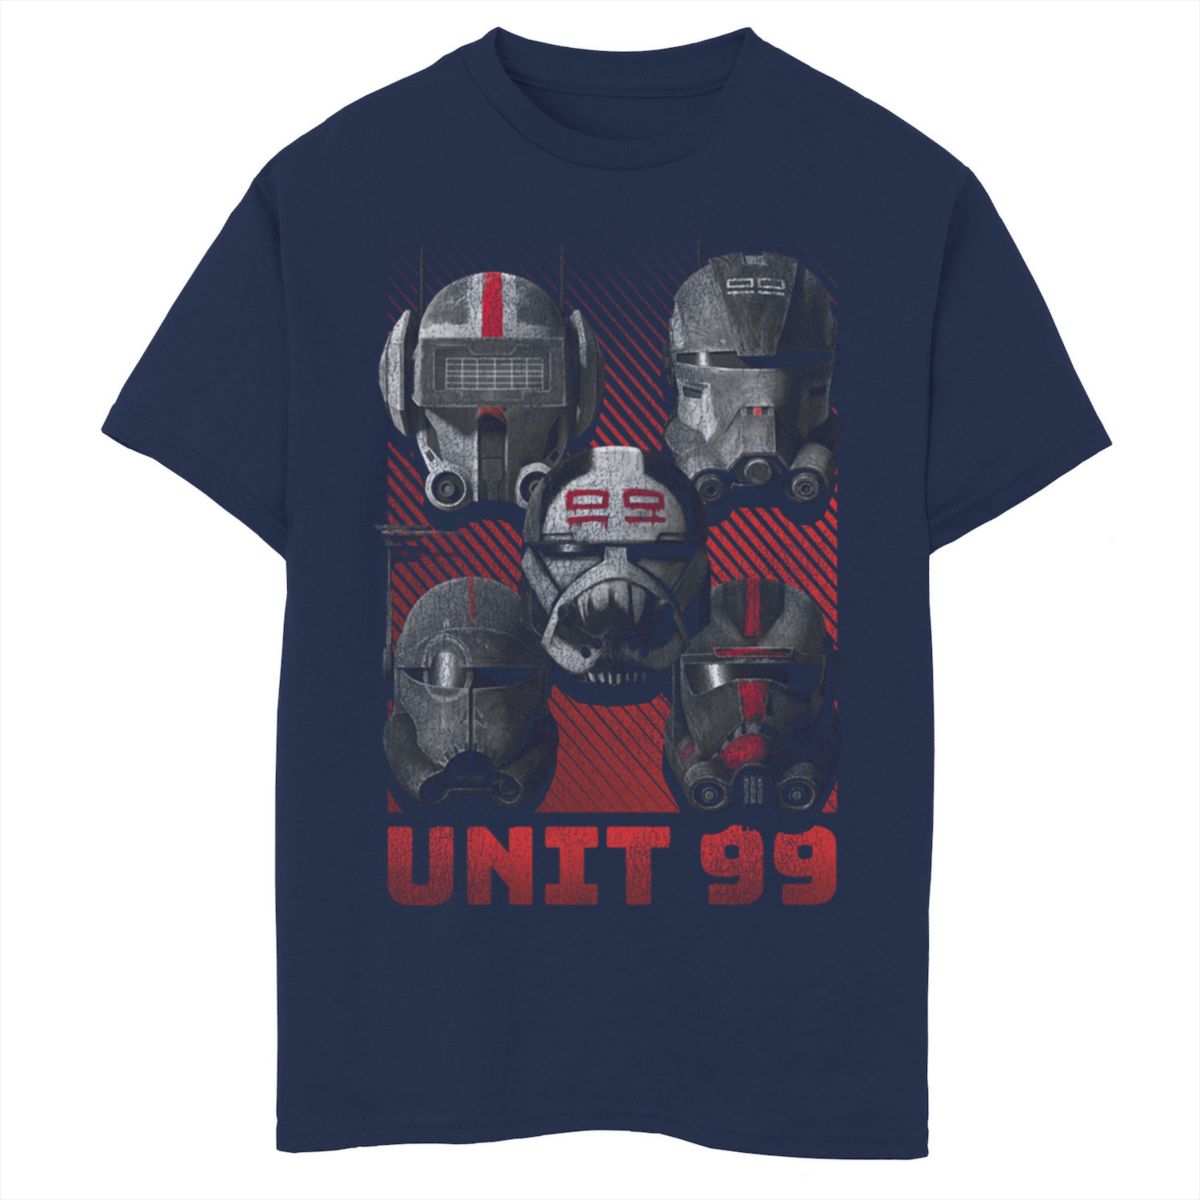 Unit 99